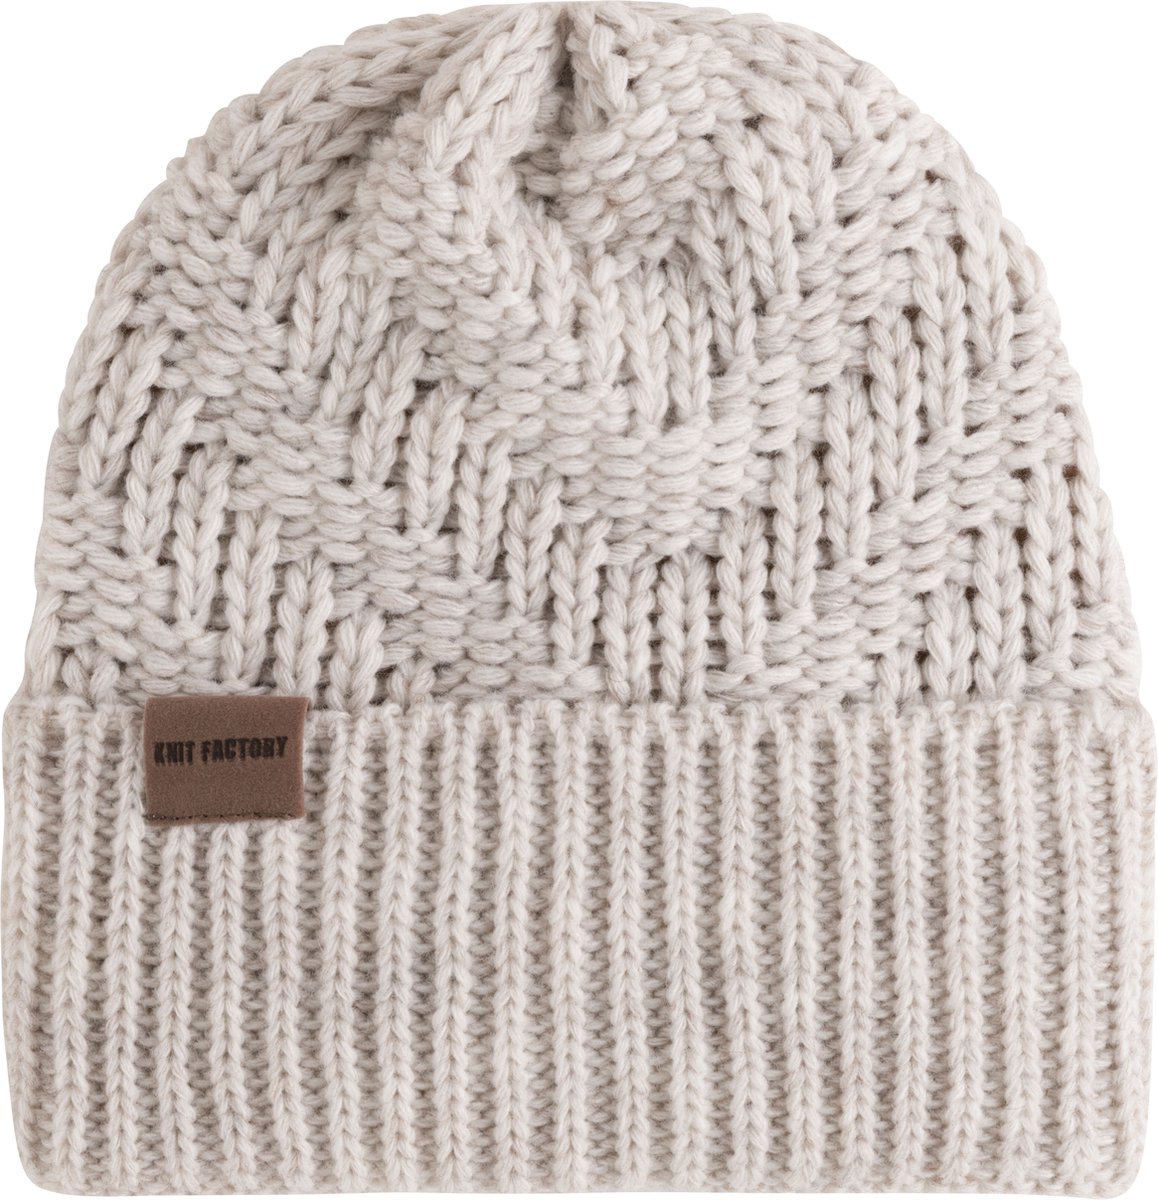 Knit Factory Sally Gebreide Muts Heren & Dames - Beanie hat - Beige - Grofgebreid - Warme Wintermuts - Unisex - One Size